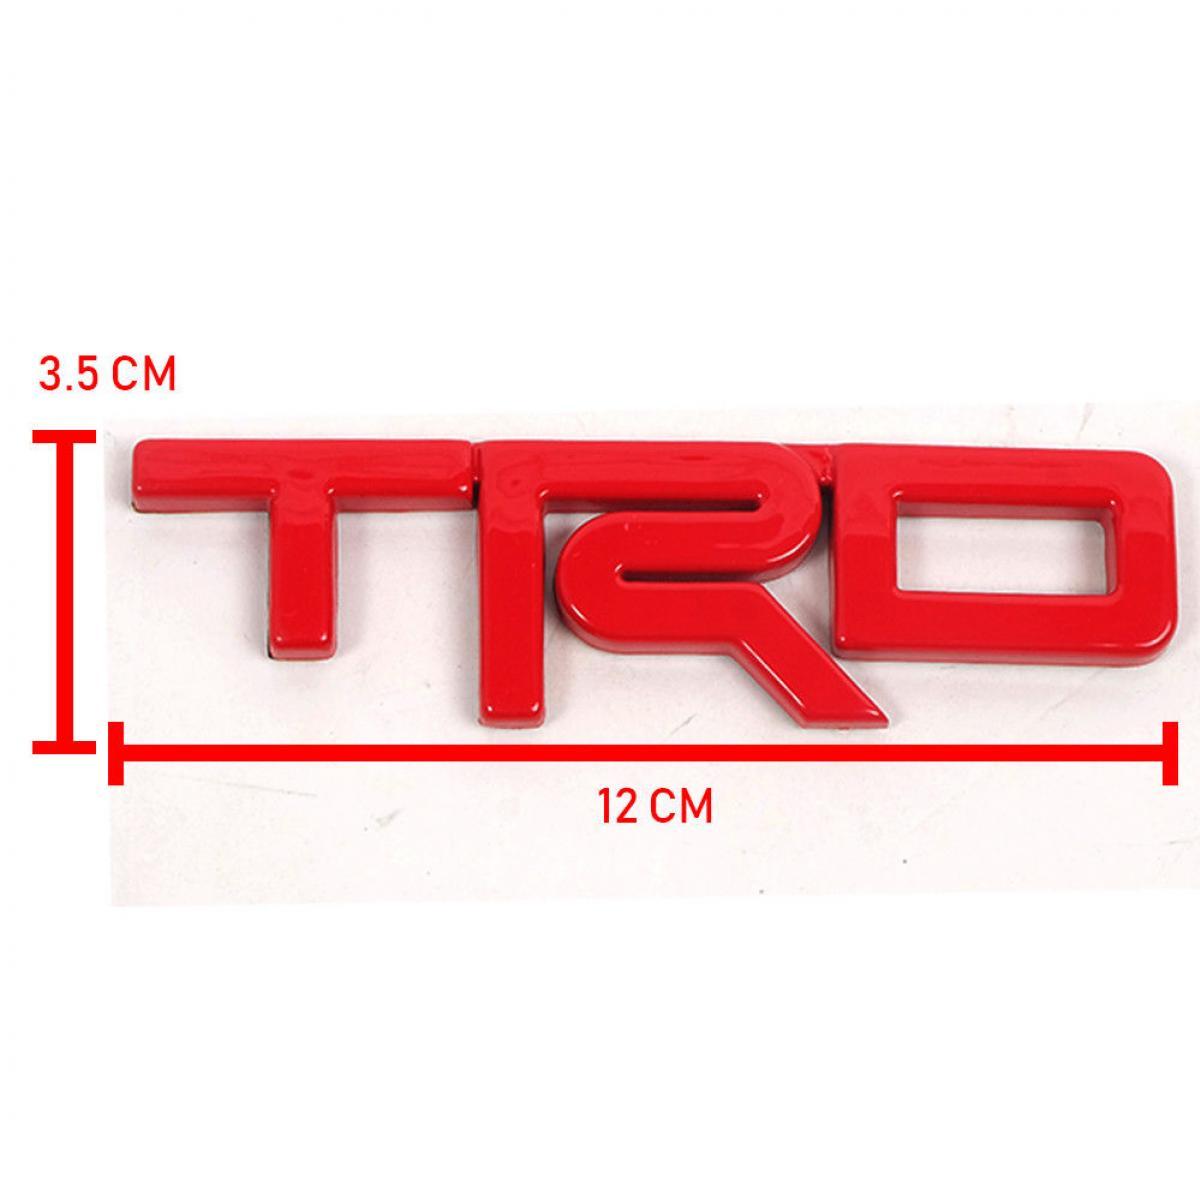 อักษร logo โลโก้ TRD สีแดง เงา โตโยต้า รีโว่ รีโว้ วีโก้ กระจังหน้า ABS + 3M เทป ขนาด 13.5*3.5*0.5